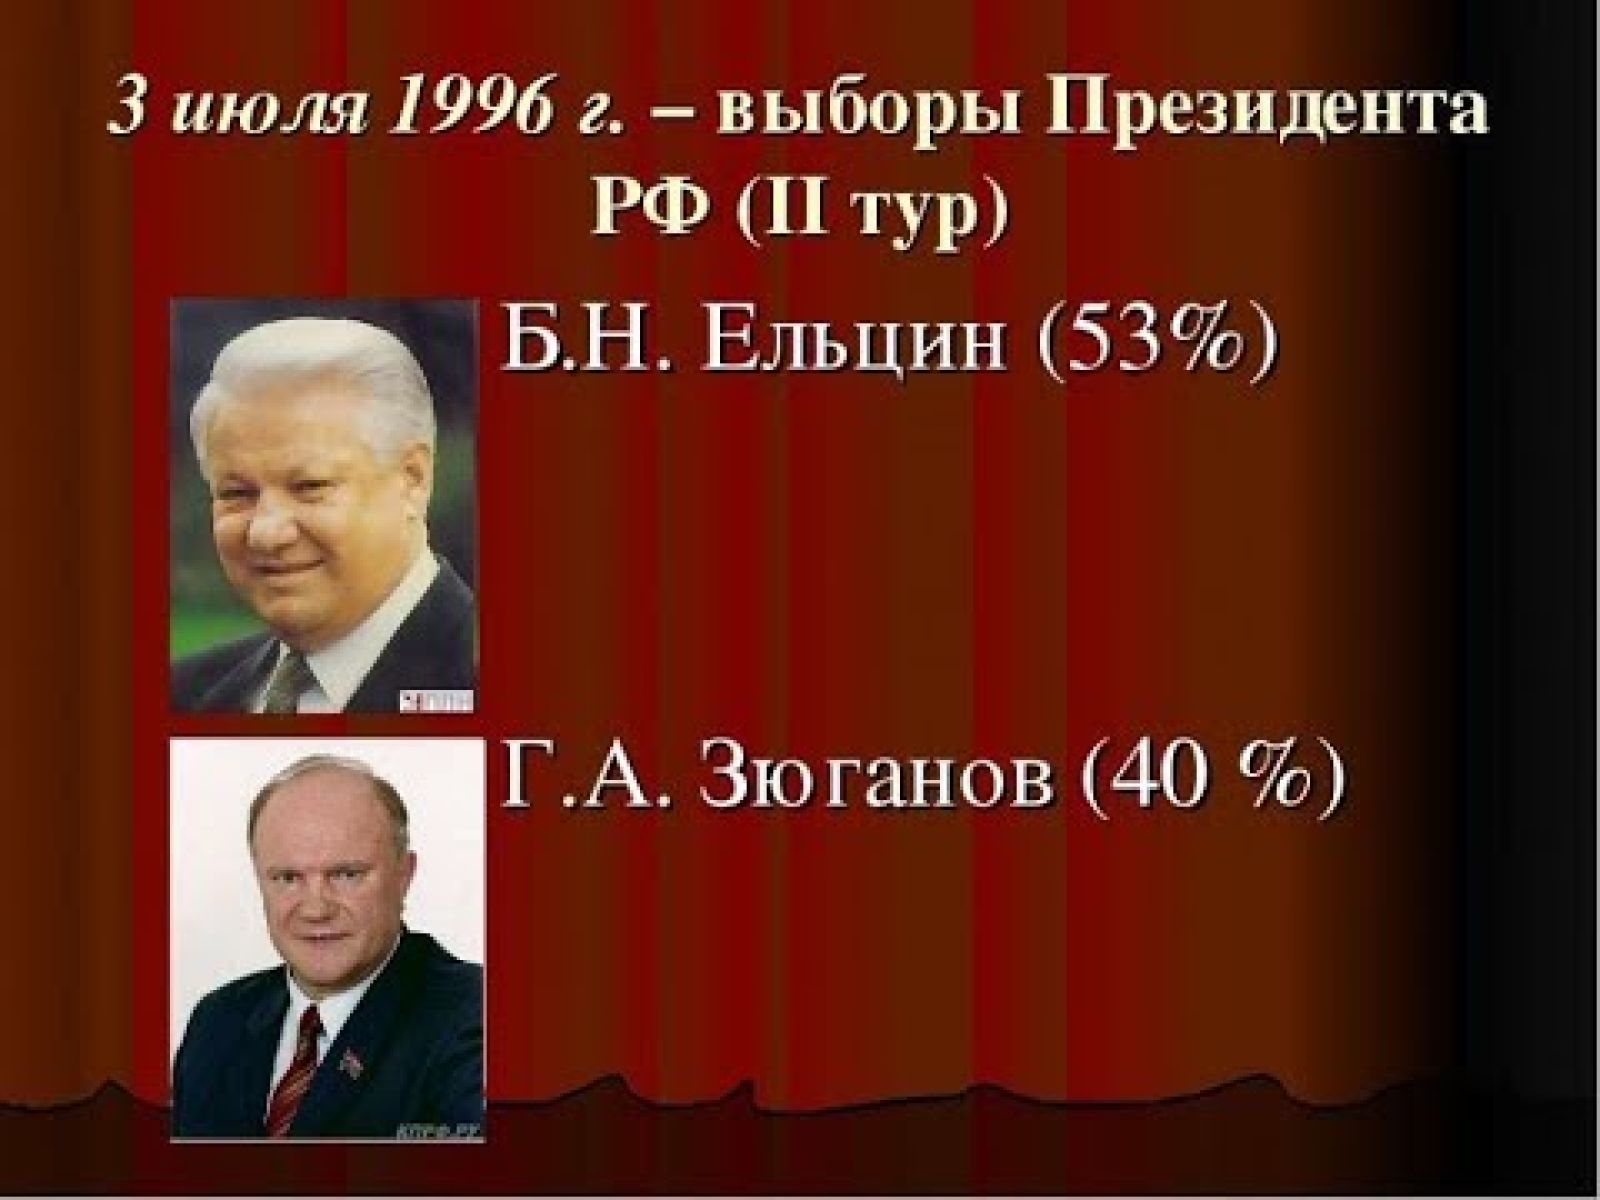 Вас рф 8 от 01.07 1996. Ельцин и Зюганов выборы президента 1996 года. Выборы президента РФ 16 июня - 3 июля 1996 года.